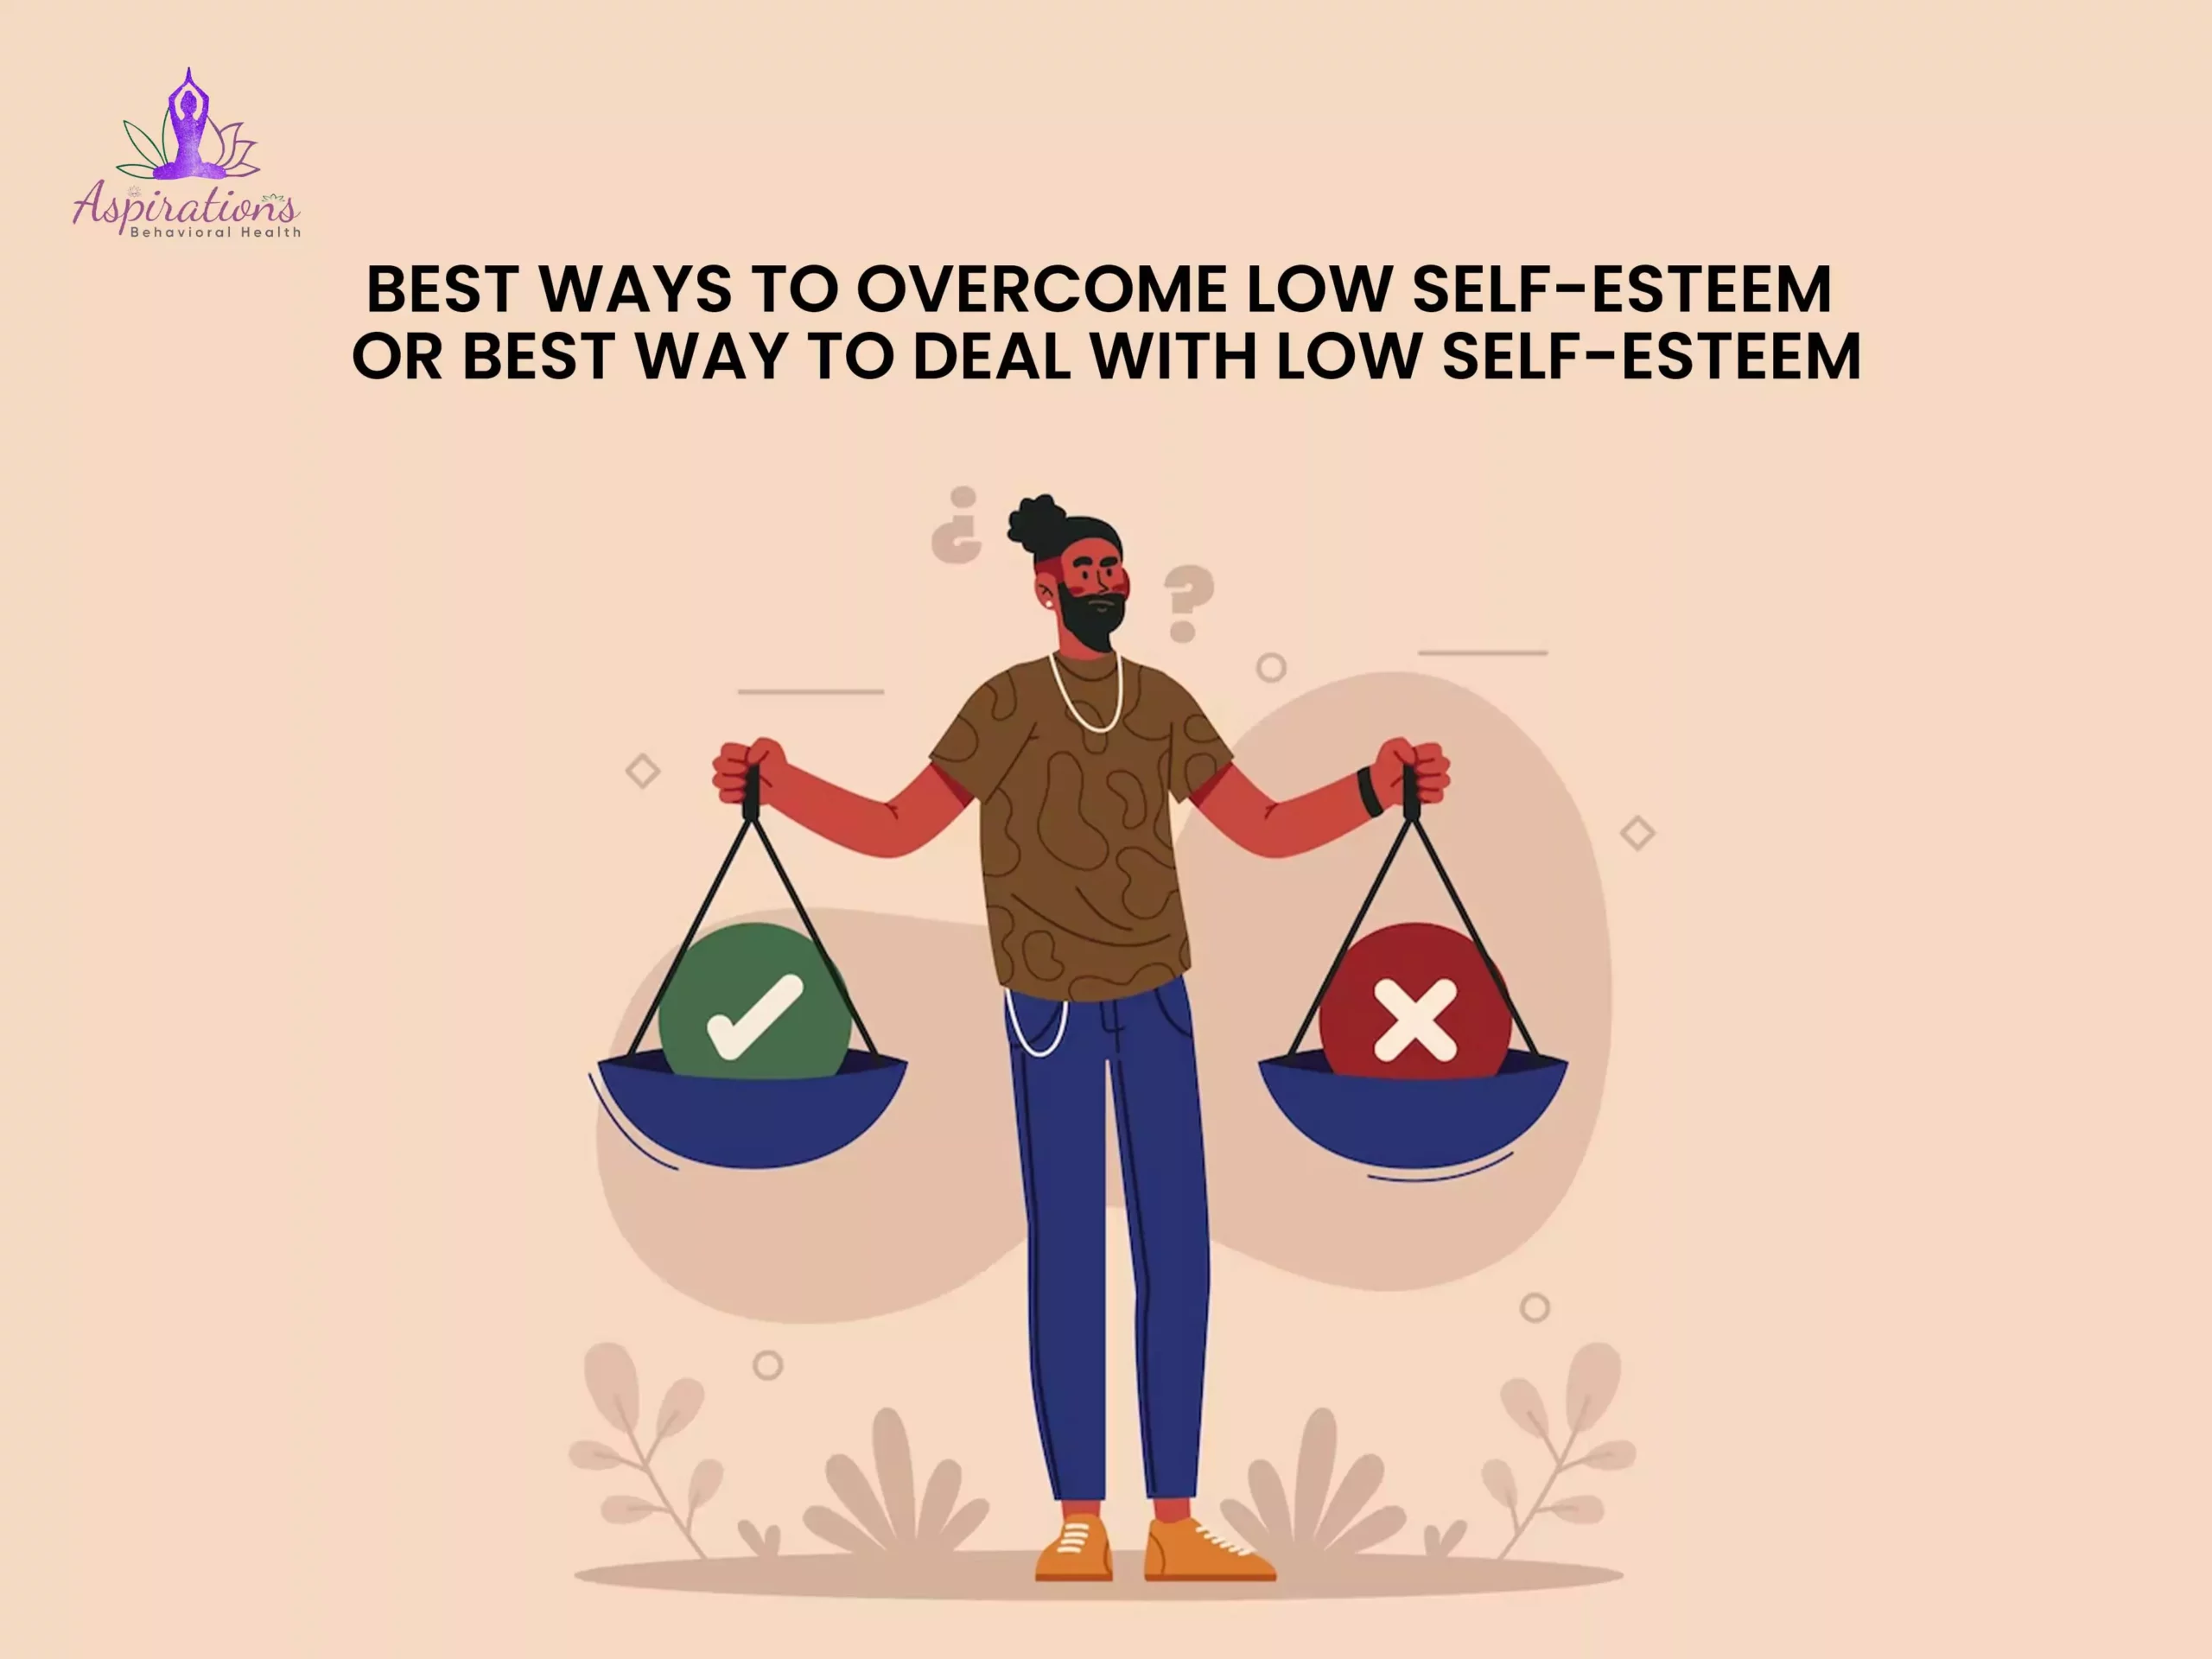 Best Ways to Overcome Low Self-Esteem or Best Way to Deal with Low Self-Esteem